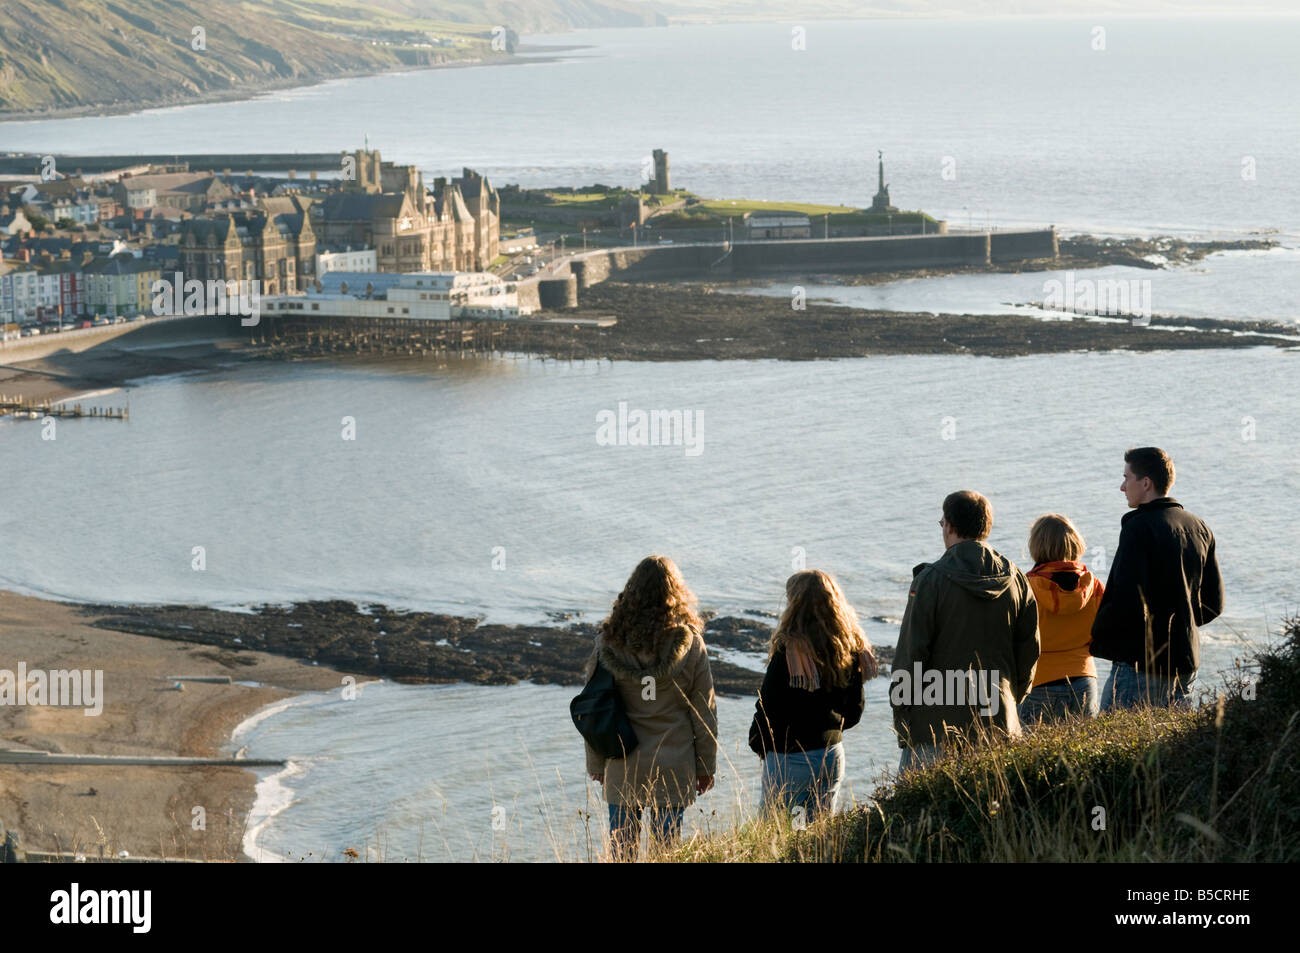 Gruppe von 5 Studenten auf Constitution Hill mit Blick auf die Stadt am Meer Resort von Aberystwyth Wales UK Herbstnachmittag Stockfoto